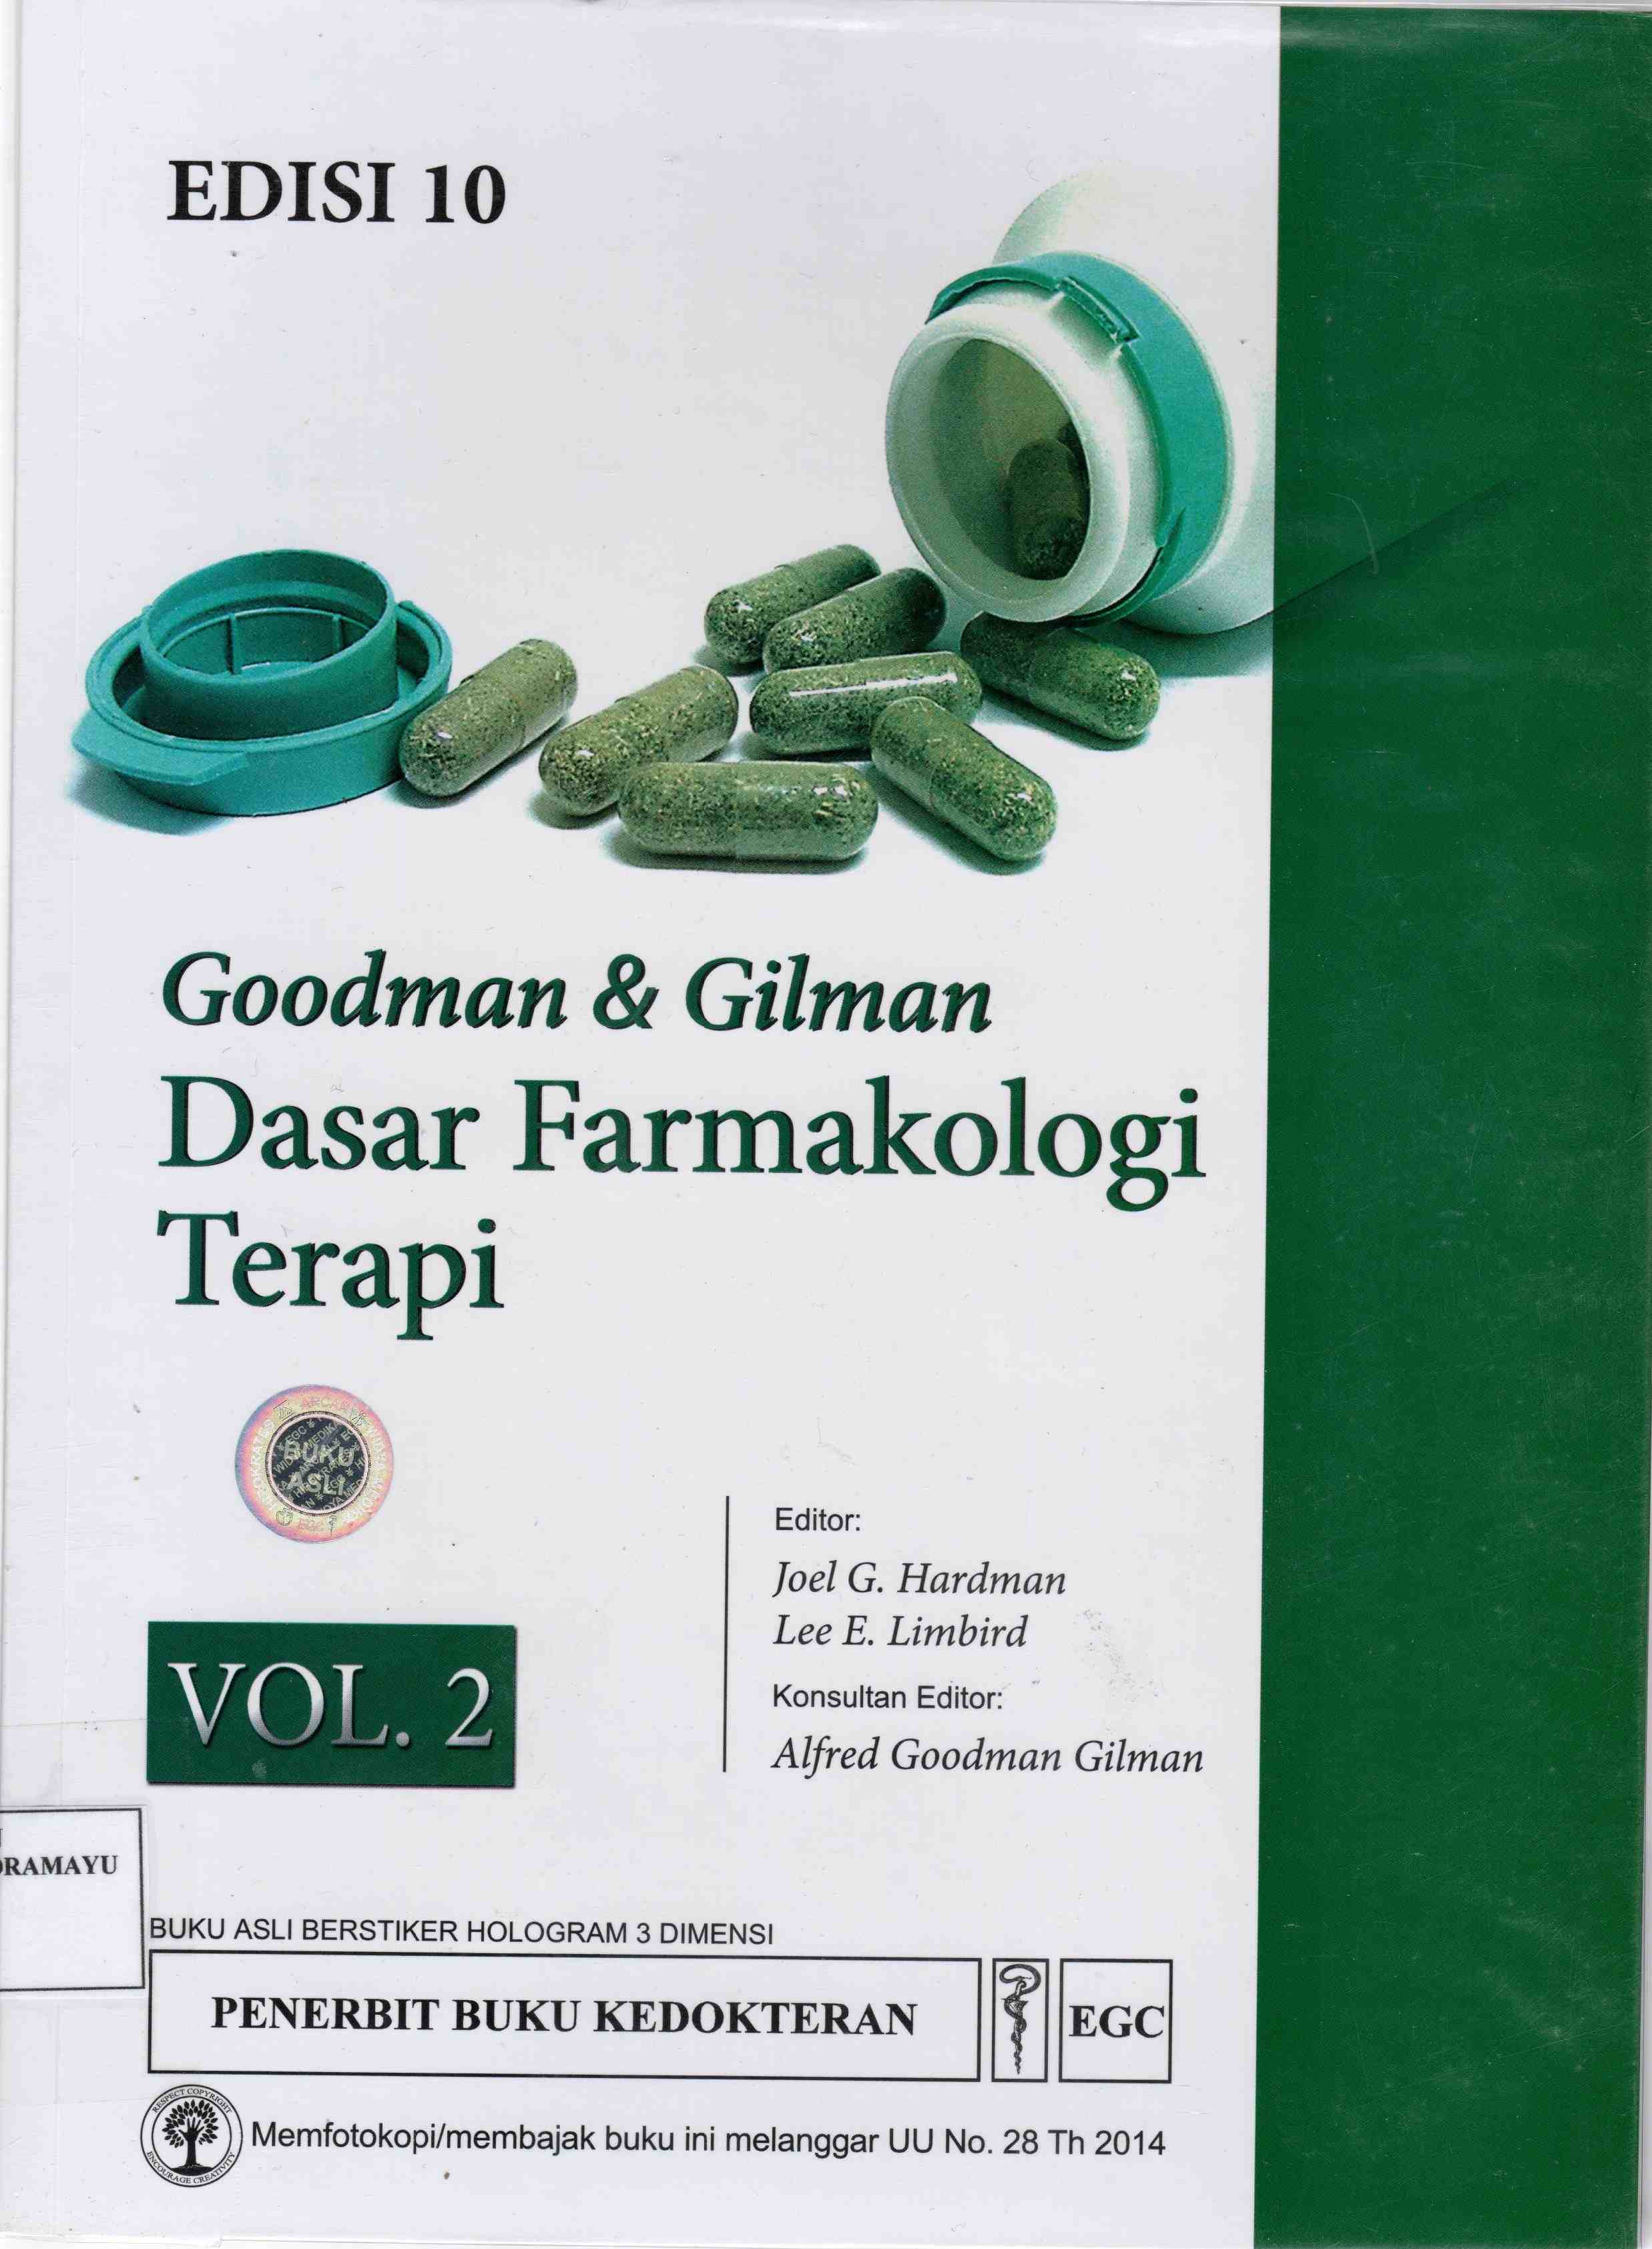 Goodman & Gilman Dasar Farmakologi Terapi Vol 2 ED.10